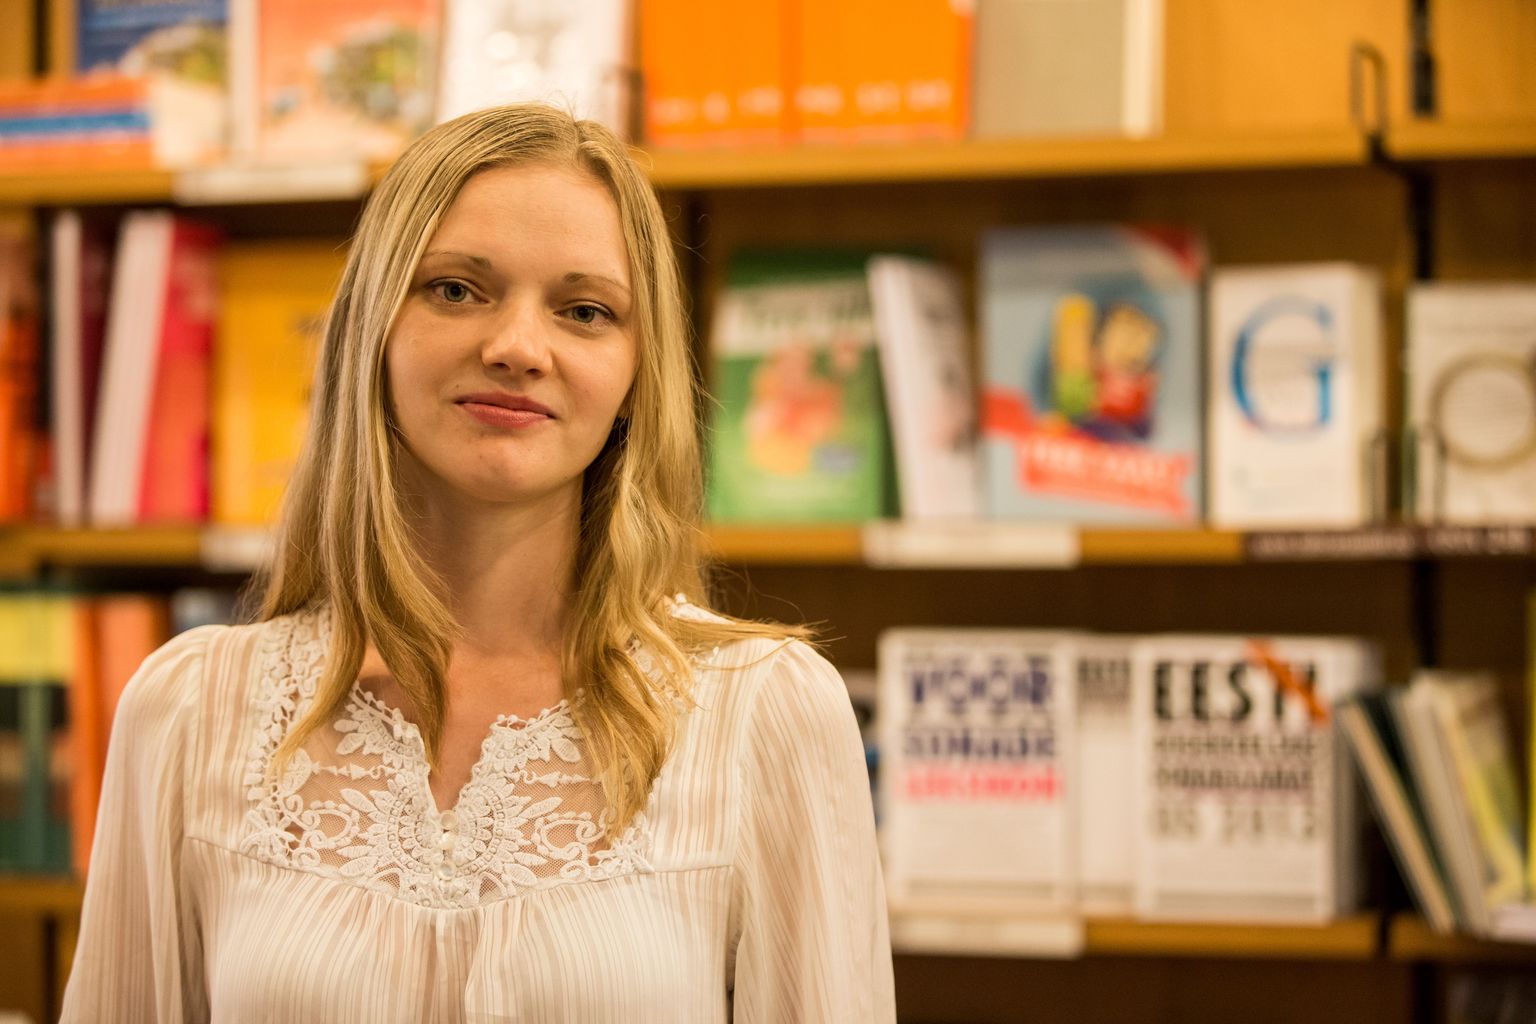 В работе «Обучение эстонскому языку жителей Силламяэ» Анна-Ольга Луга раскрывает недостатки государственной языковой политики.